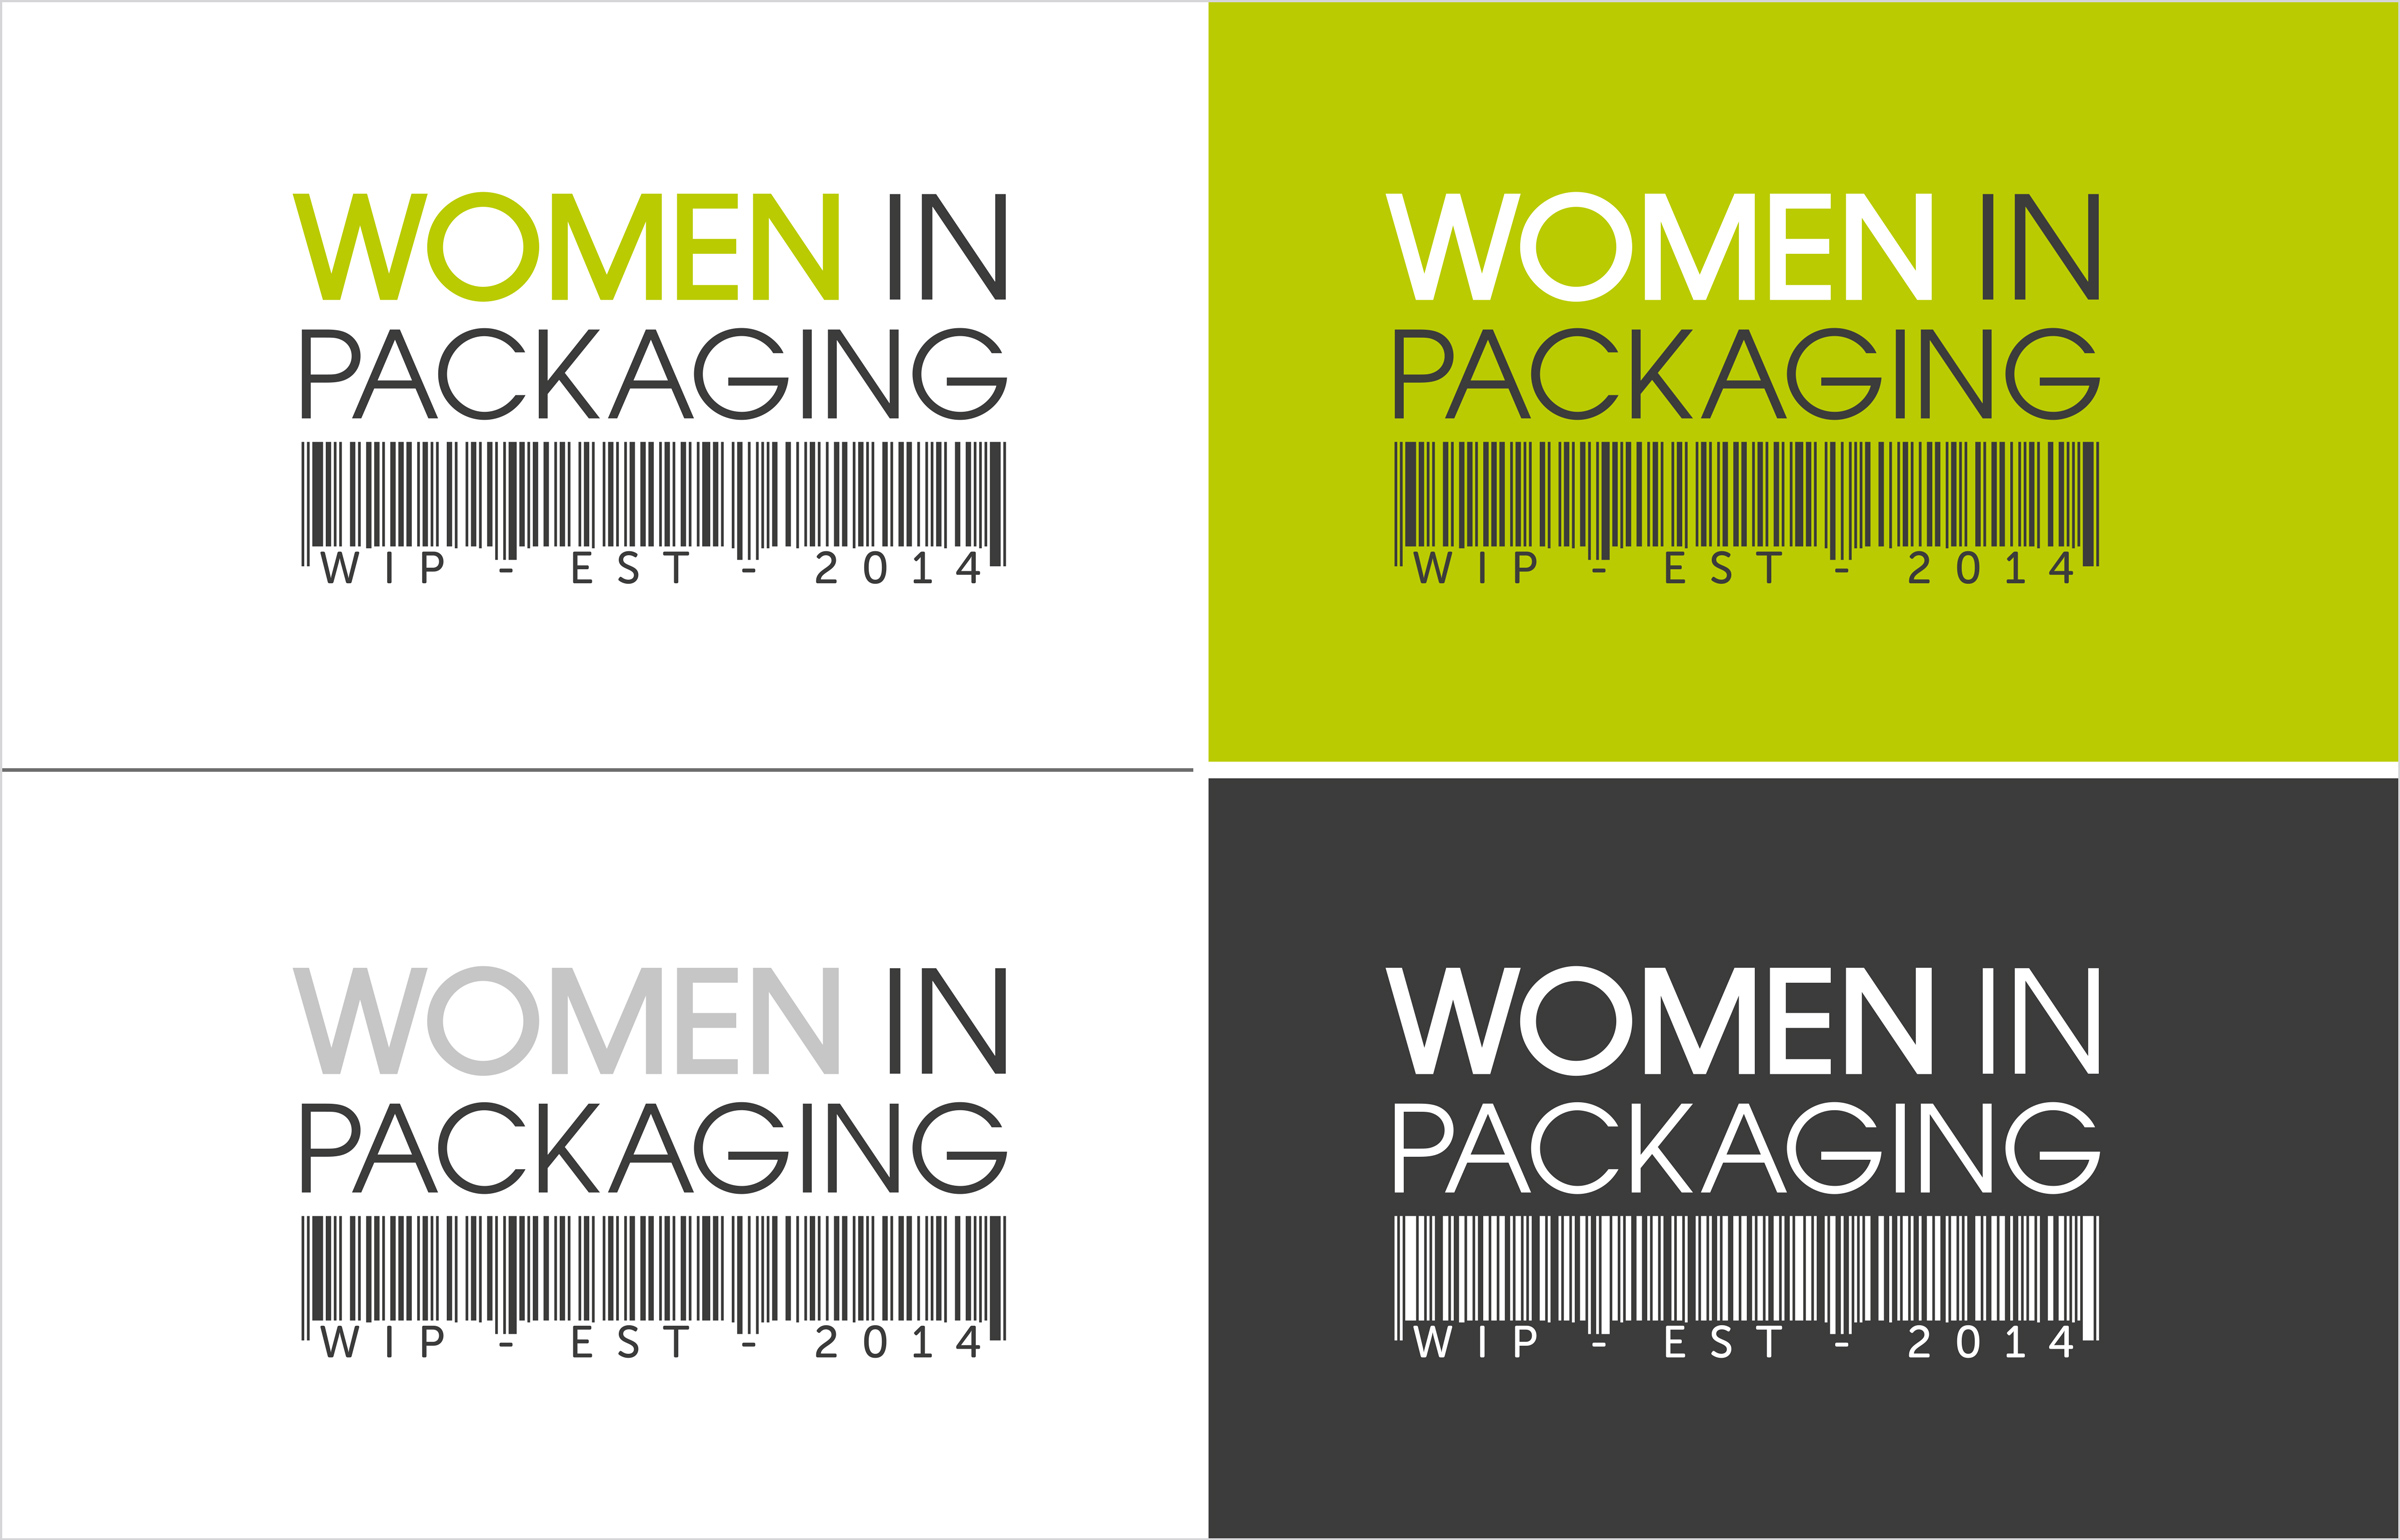 Women In Packaging UK